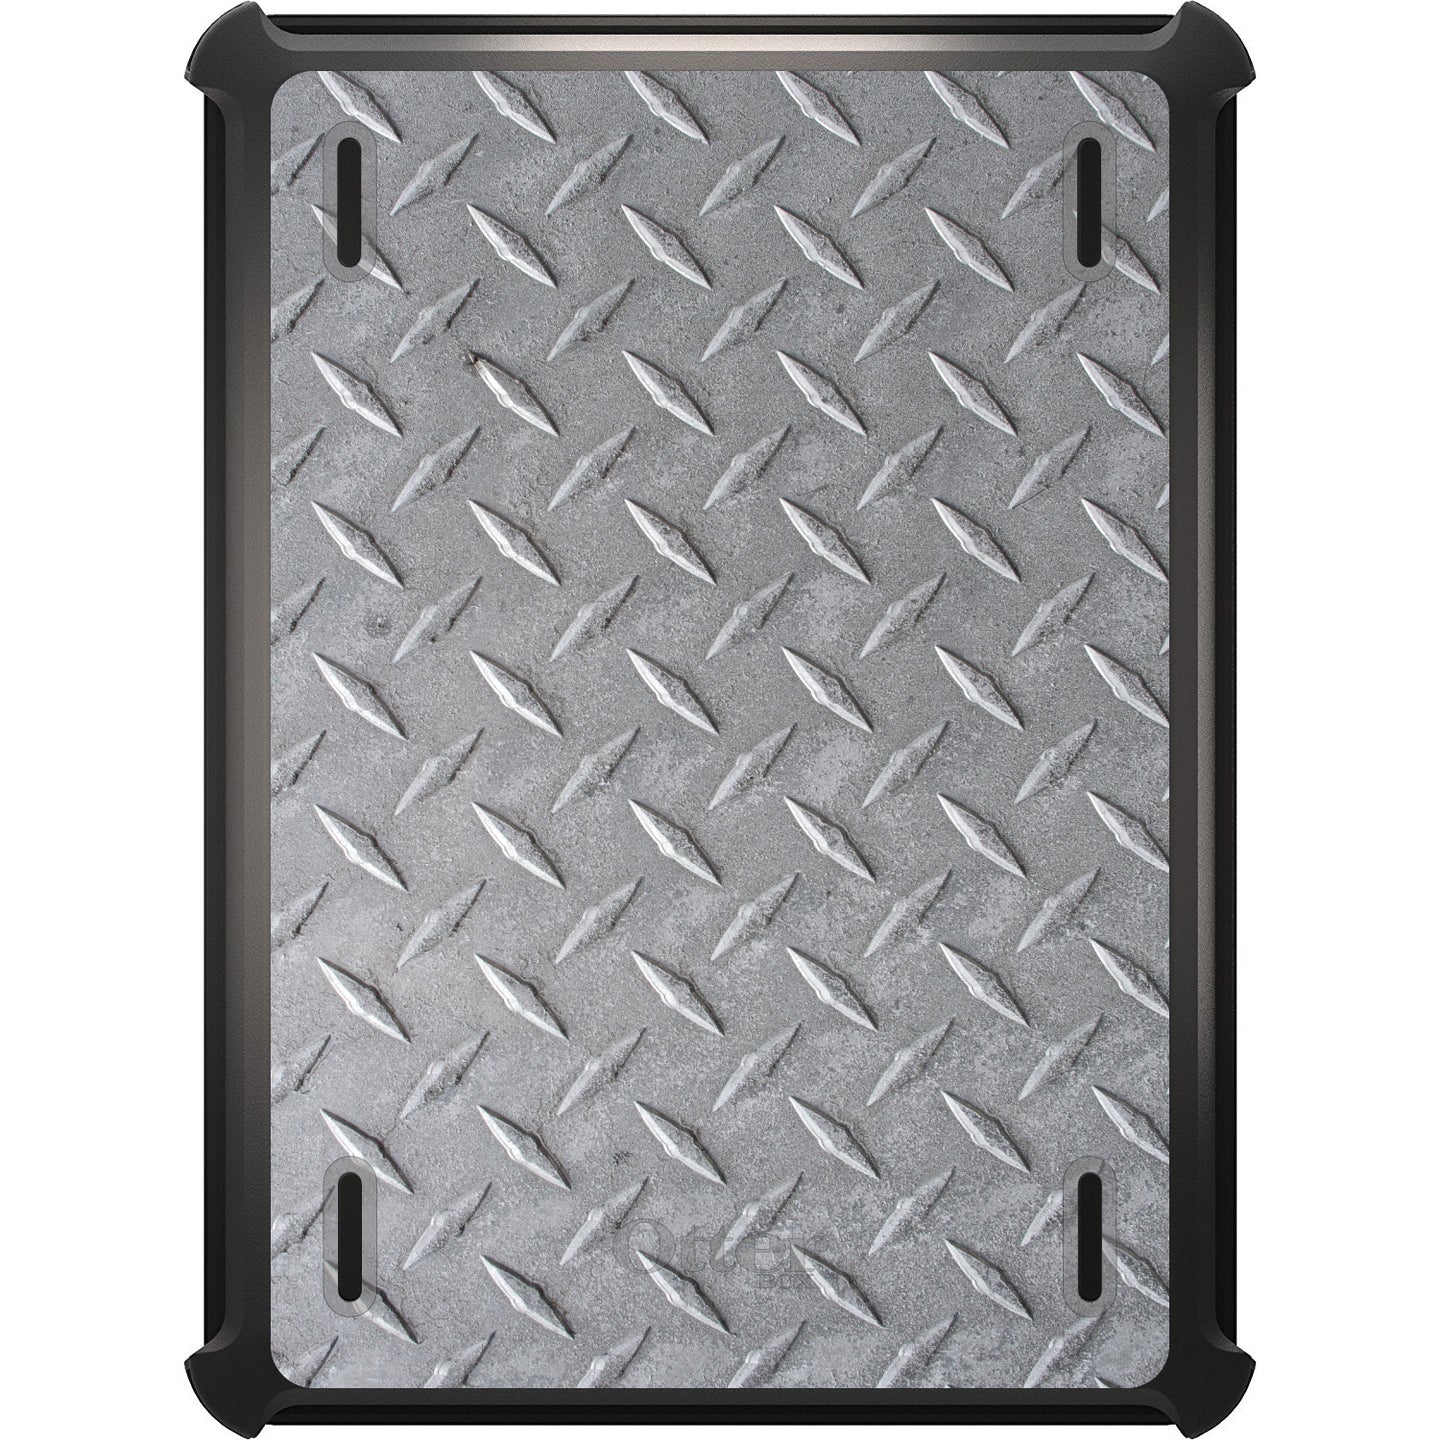 DistinctInk™ OtterBox Defender Series Case for Apple iPad / iPad Pro / iPad Air / iPad Mini - Grey Diamond Plate Steel